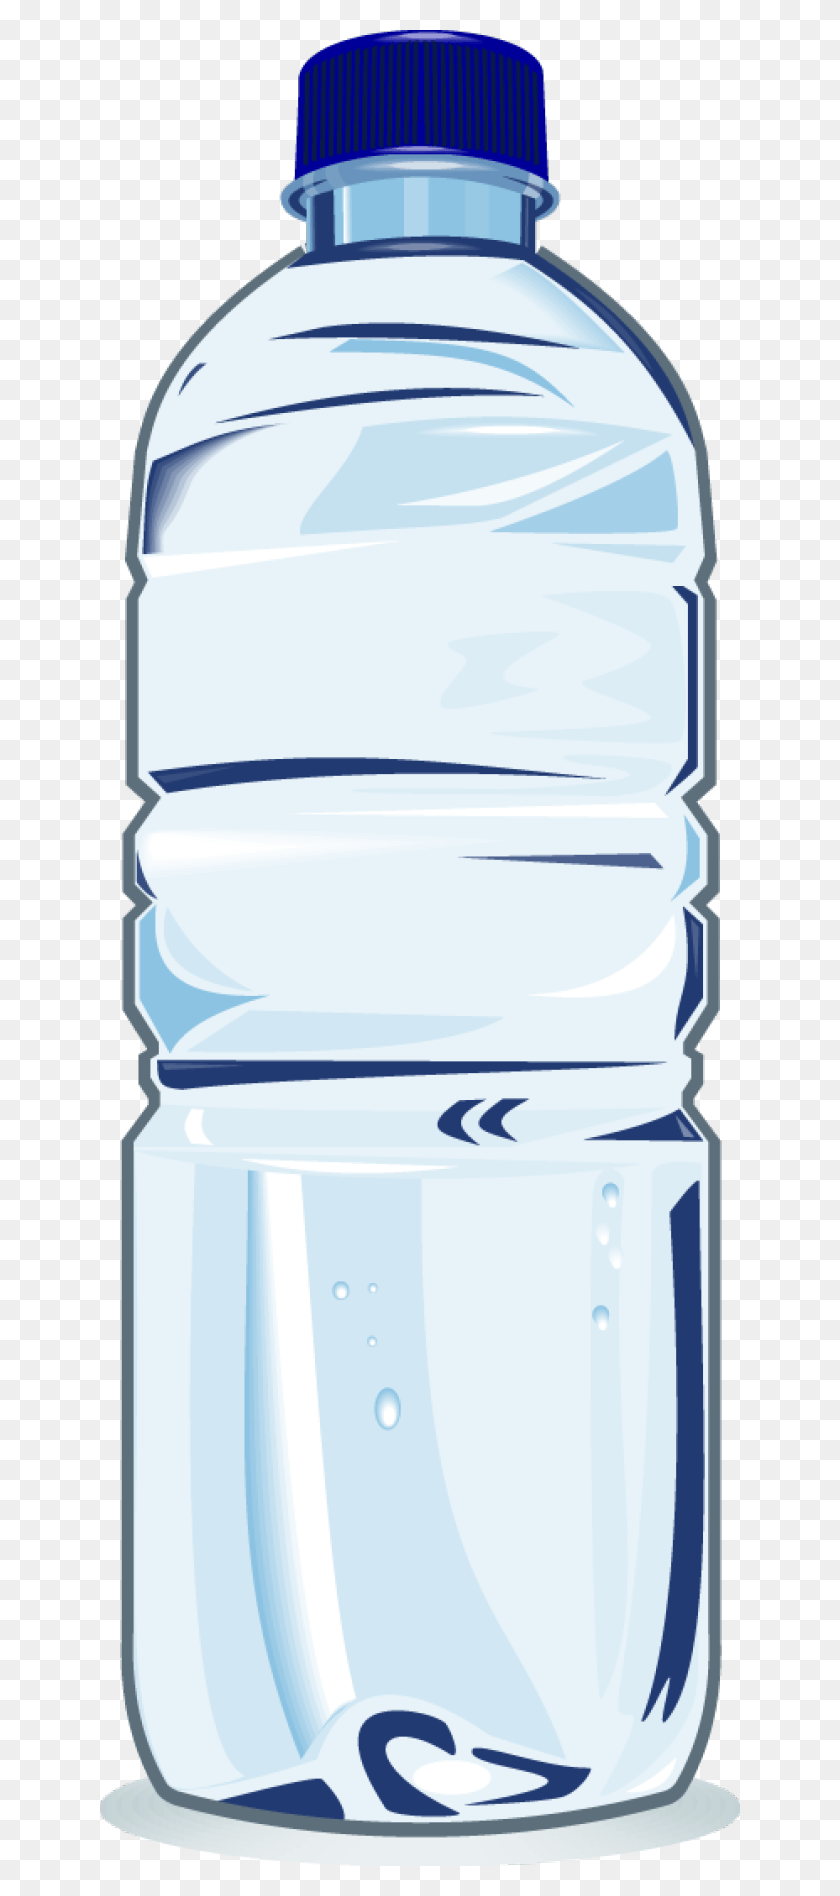 640x1836 Royalty Free Jokingart Com Бесплатная Печать Пластиковая Бутылка С Водой Клипарт, Минеральная Вода, Напитки, Бутылка Hd Png Скачать